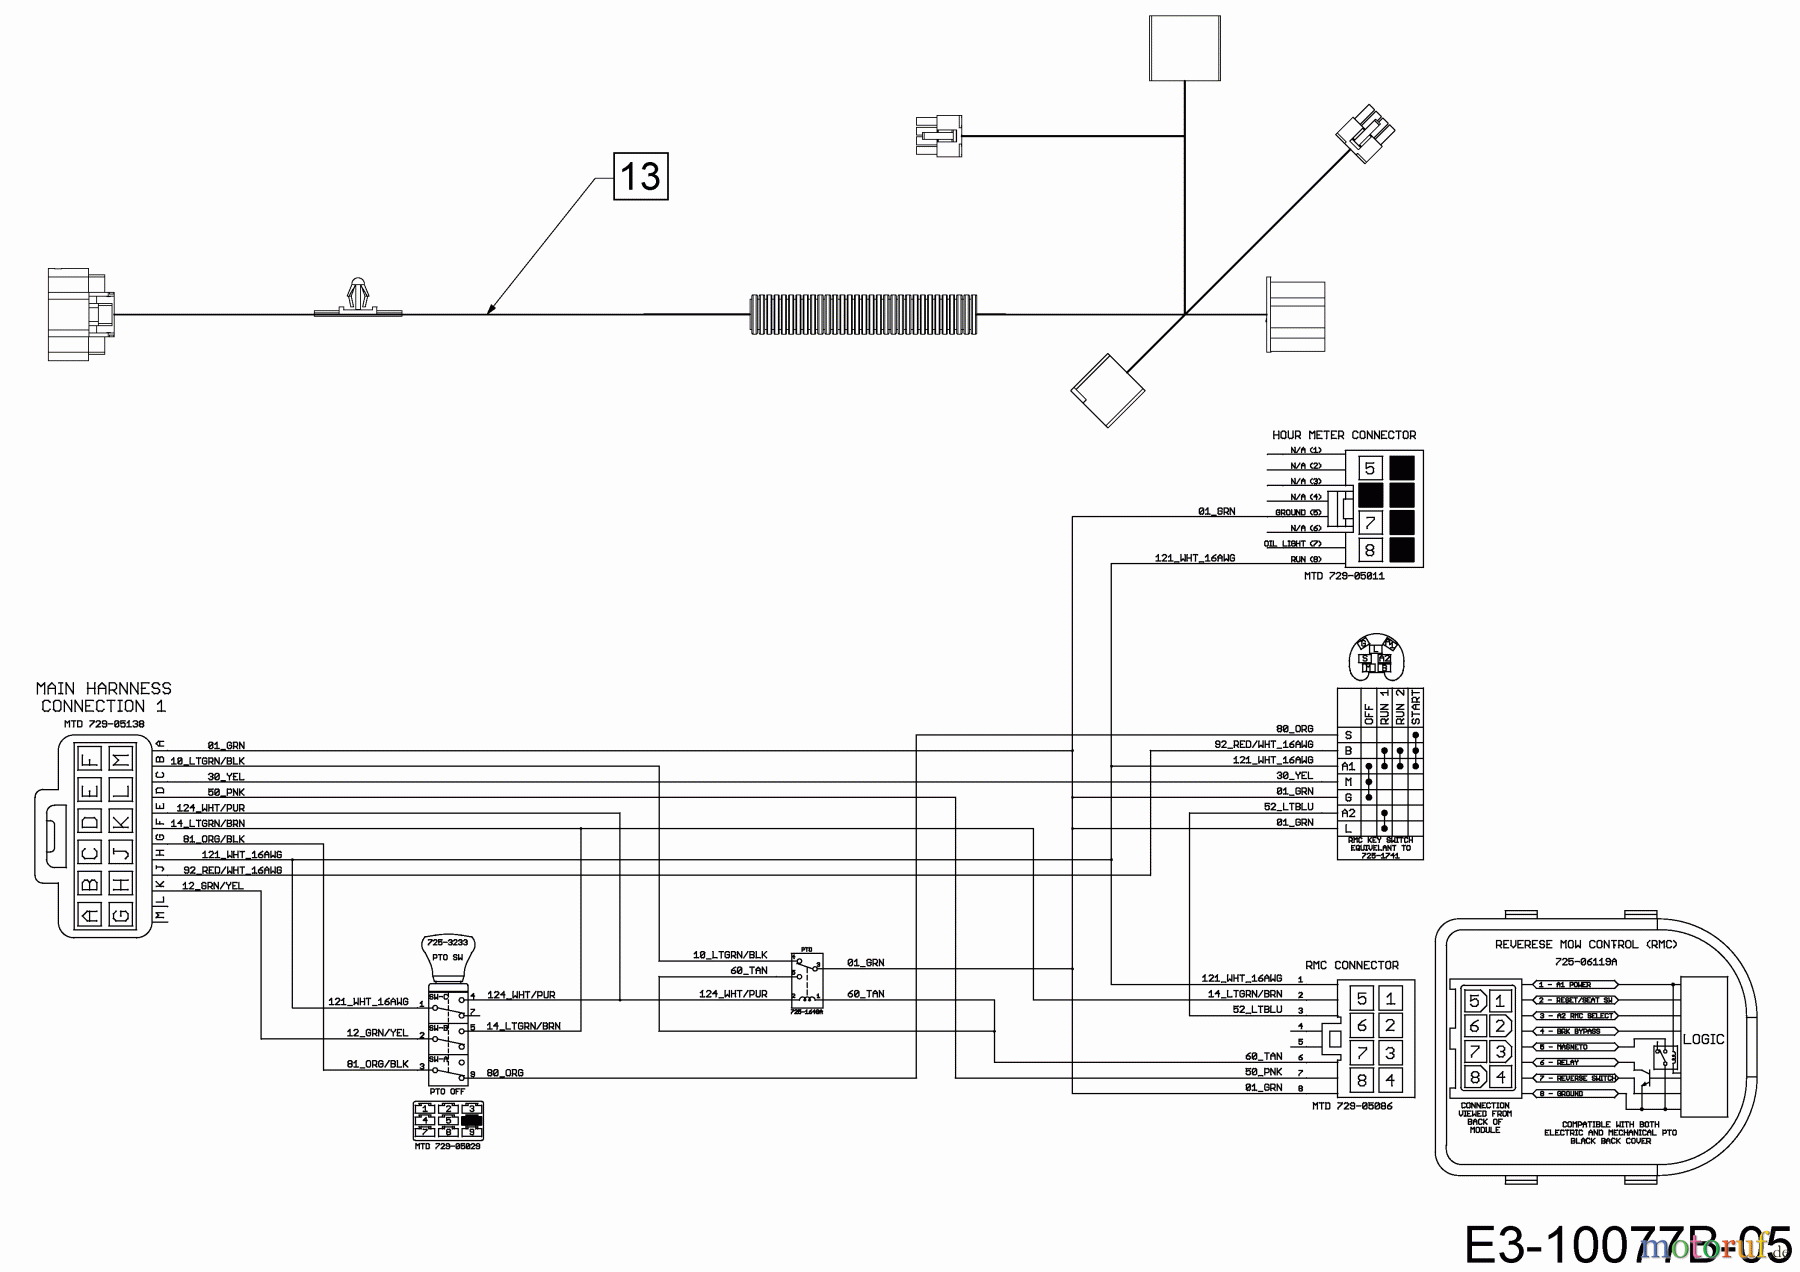  Cub Cadet Lawn tractors XT1 OR106 BS 13ALA1CR603  (2019) Wiring diagram dashboard